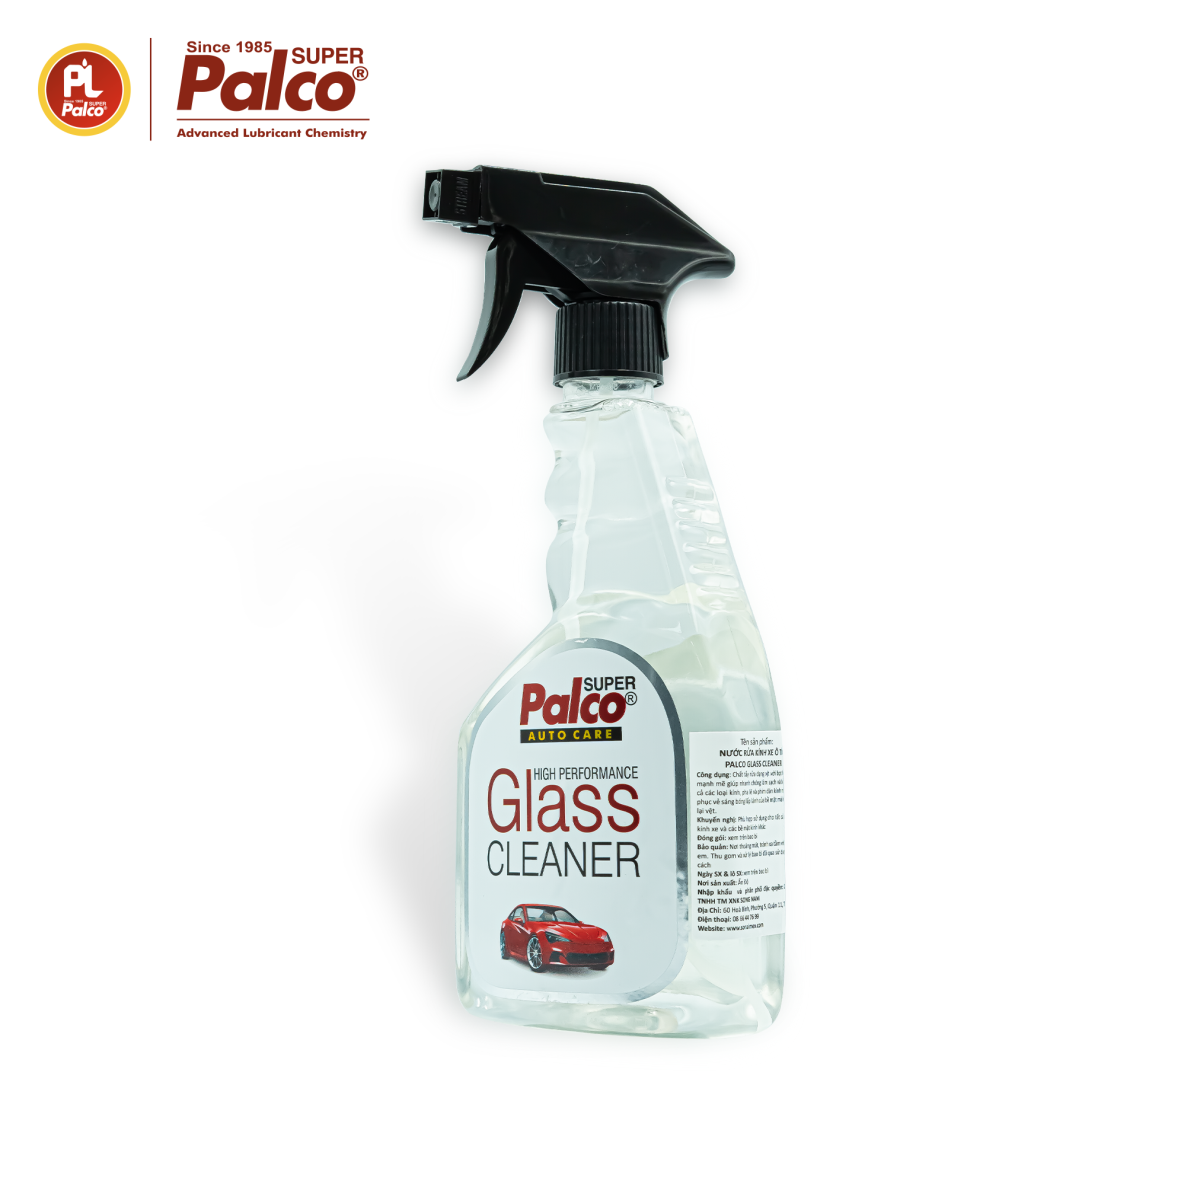 Nước rửa kính ô tô Palco Glass Cleaner